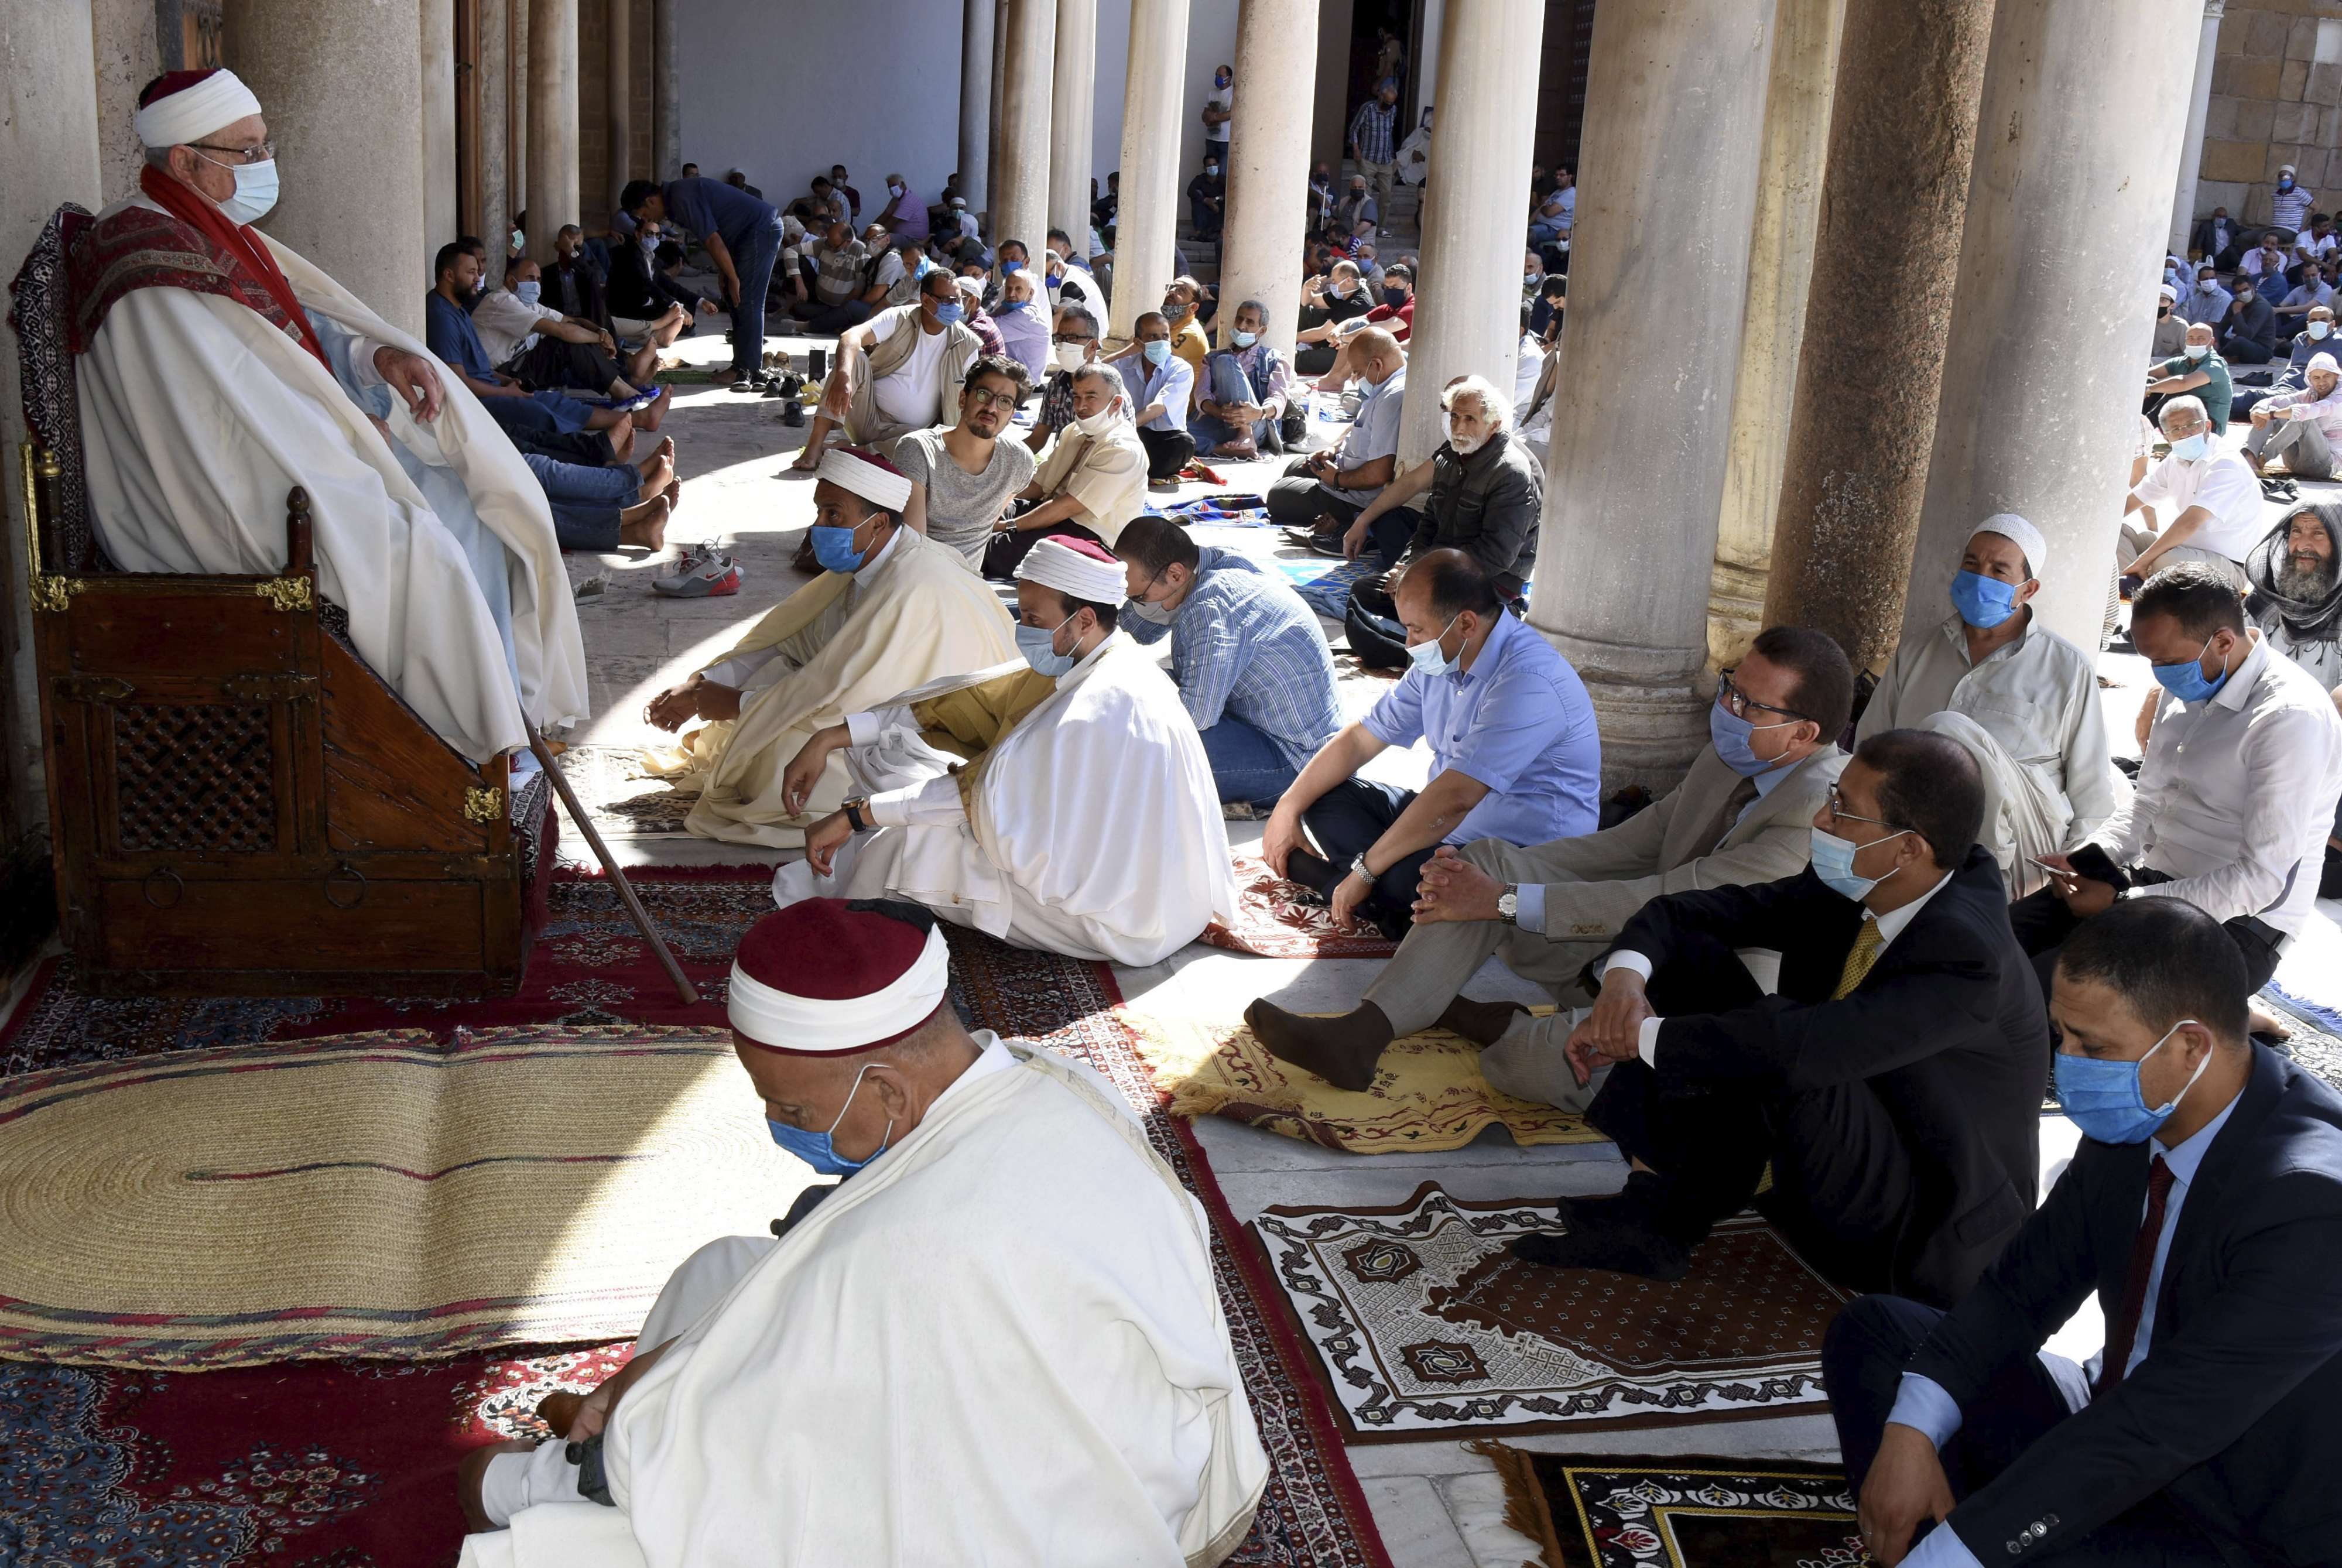 تطهير المساجد من المتطرفين يتطلب عناية مركزة ومعالجة خاصة من قبل أئمة تكونهم الدولة